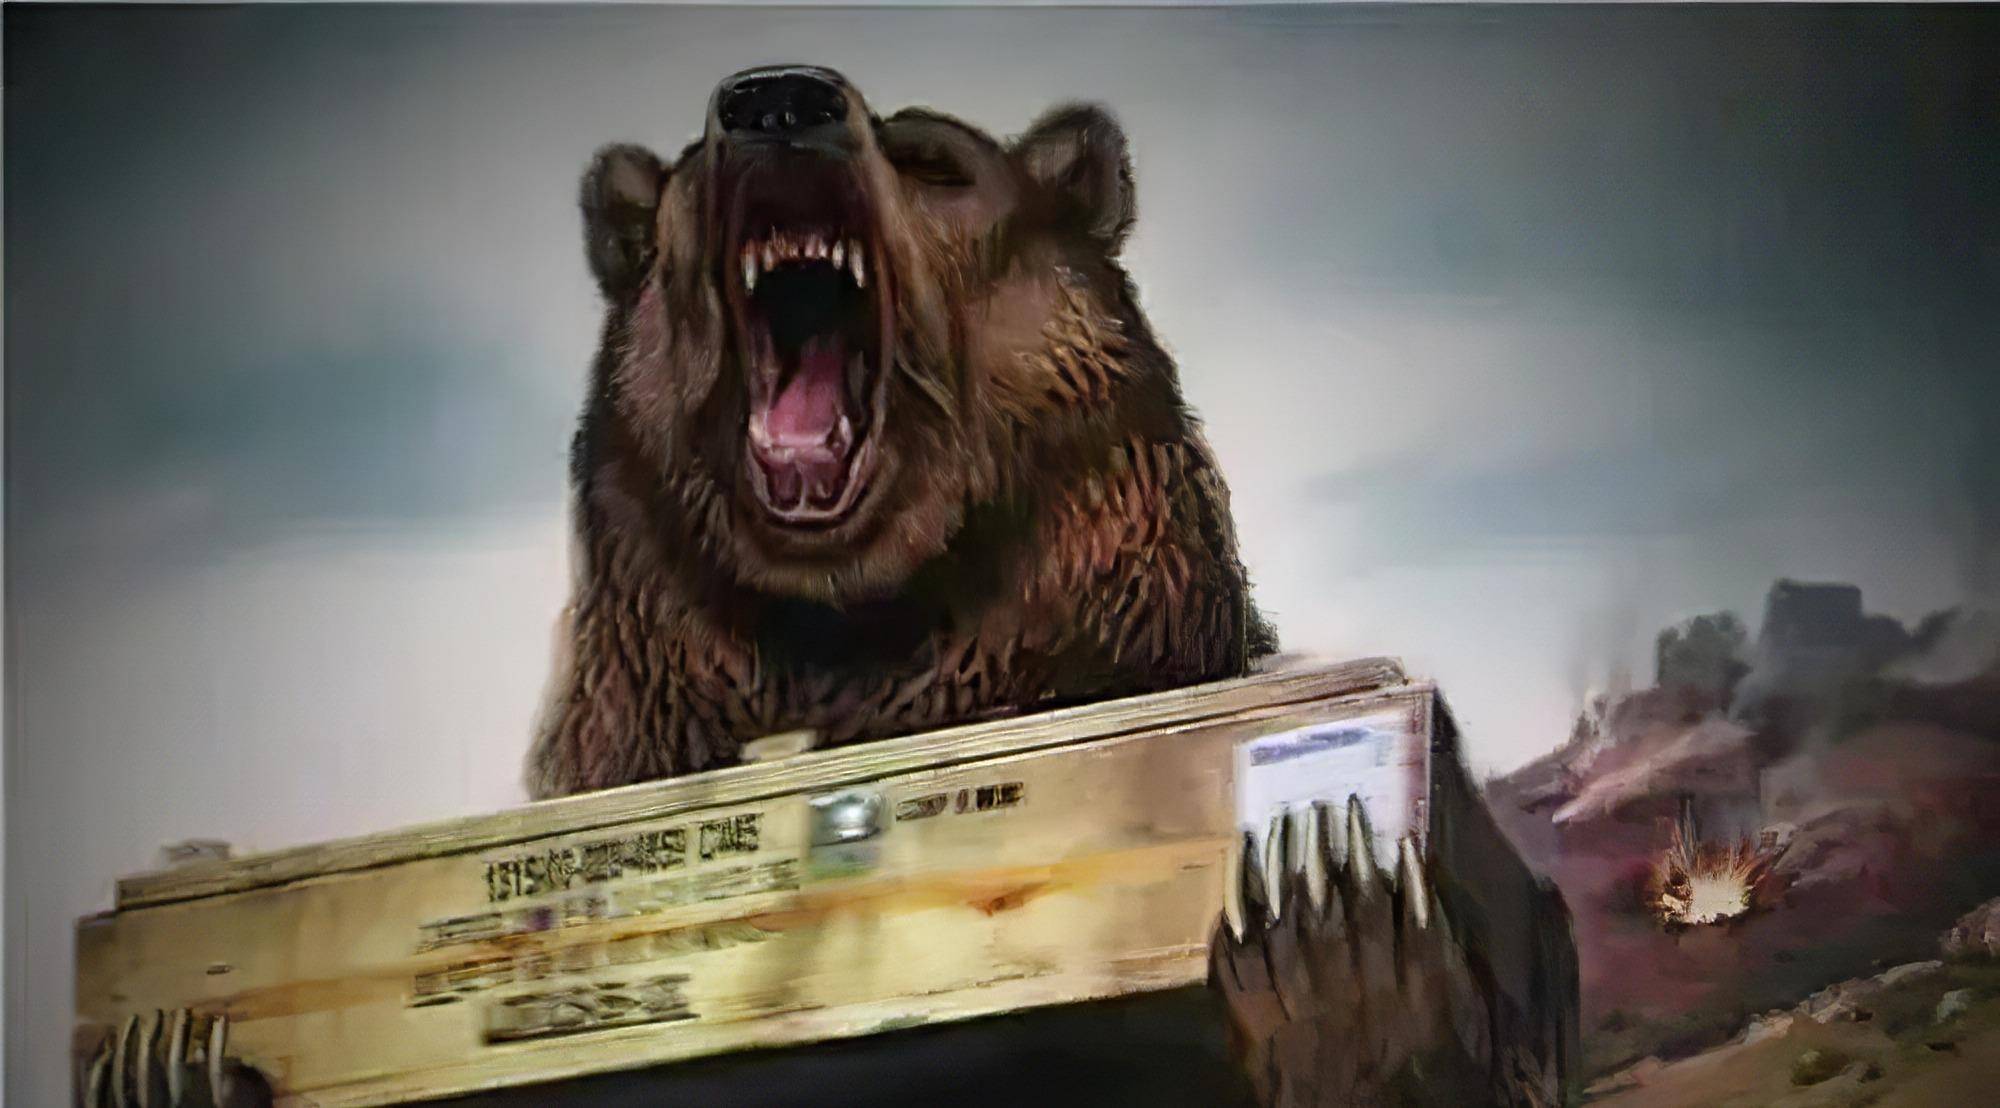 佛伊泰克,世界上唯一参加过二战的熊,还被拍成了纪录片